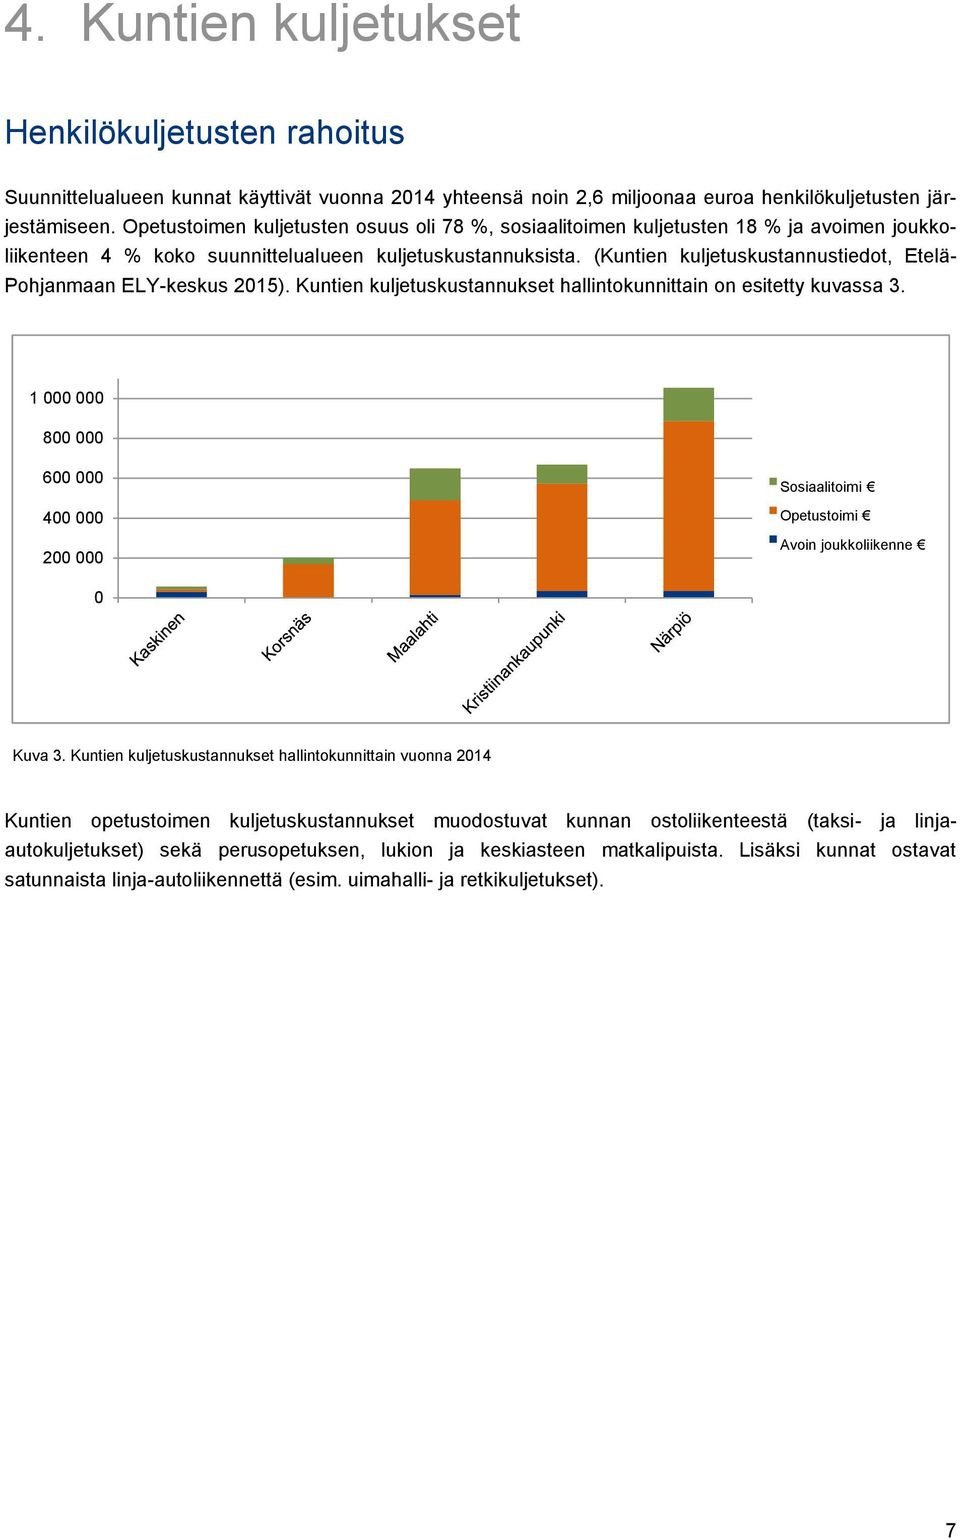 (Kuntien kuljetuskustannustiedot, Etelä- Pohjanmaan ELY-keskus 2015). Kuntien kuljetuskustannukset hallintokunnittain on esitetty kuvassa 3.